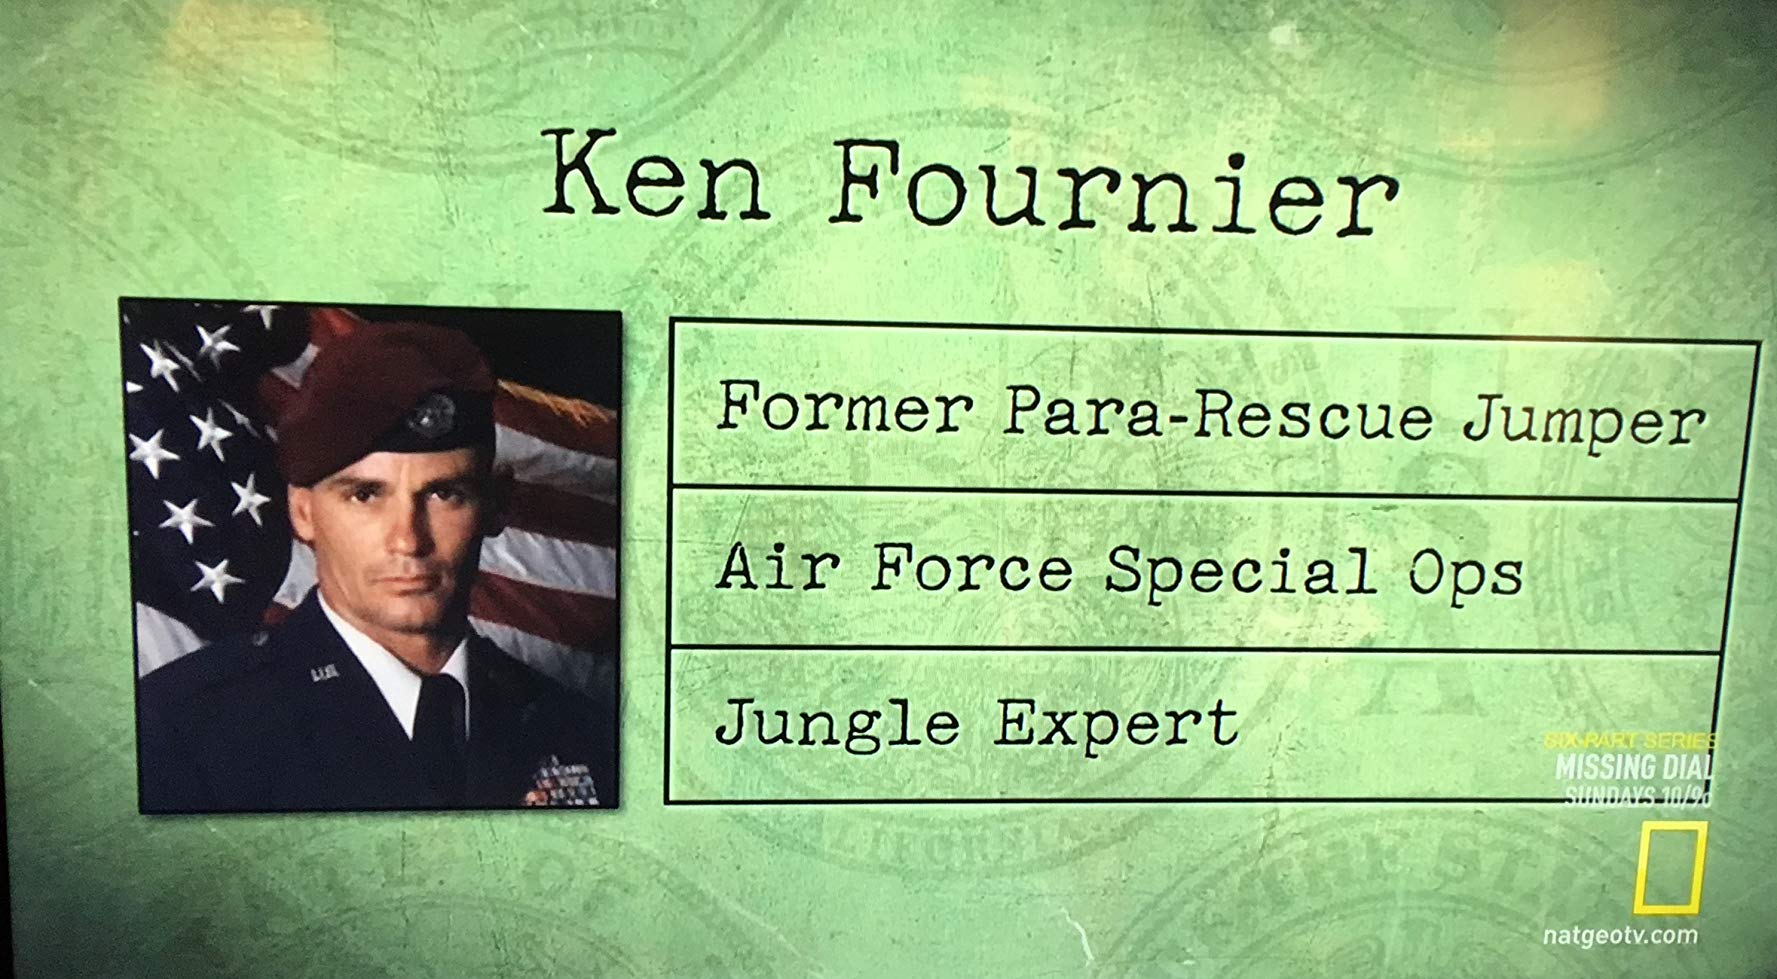 Ken Fournier